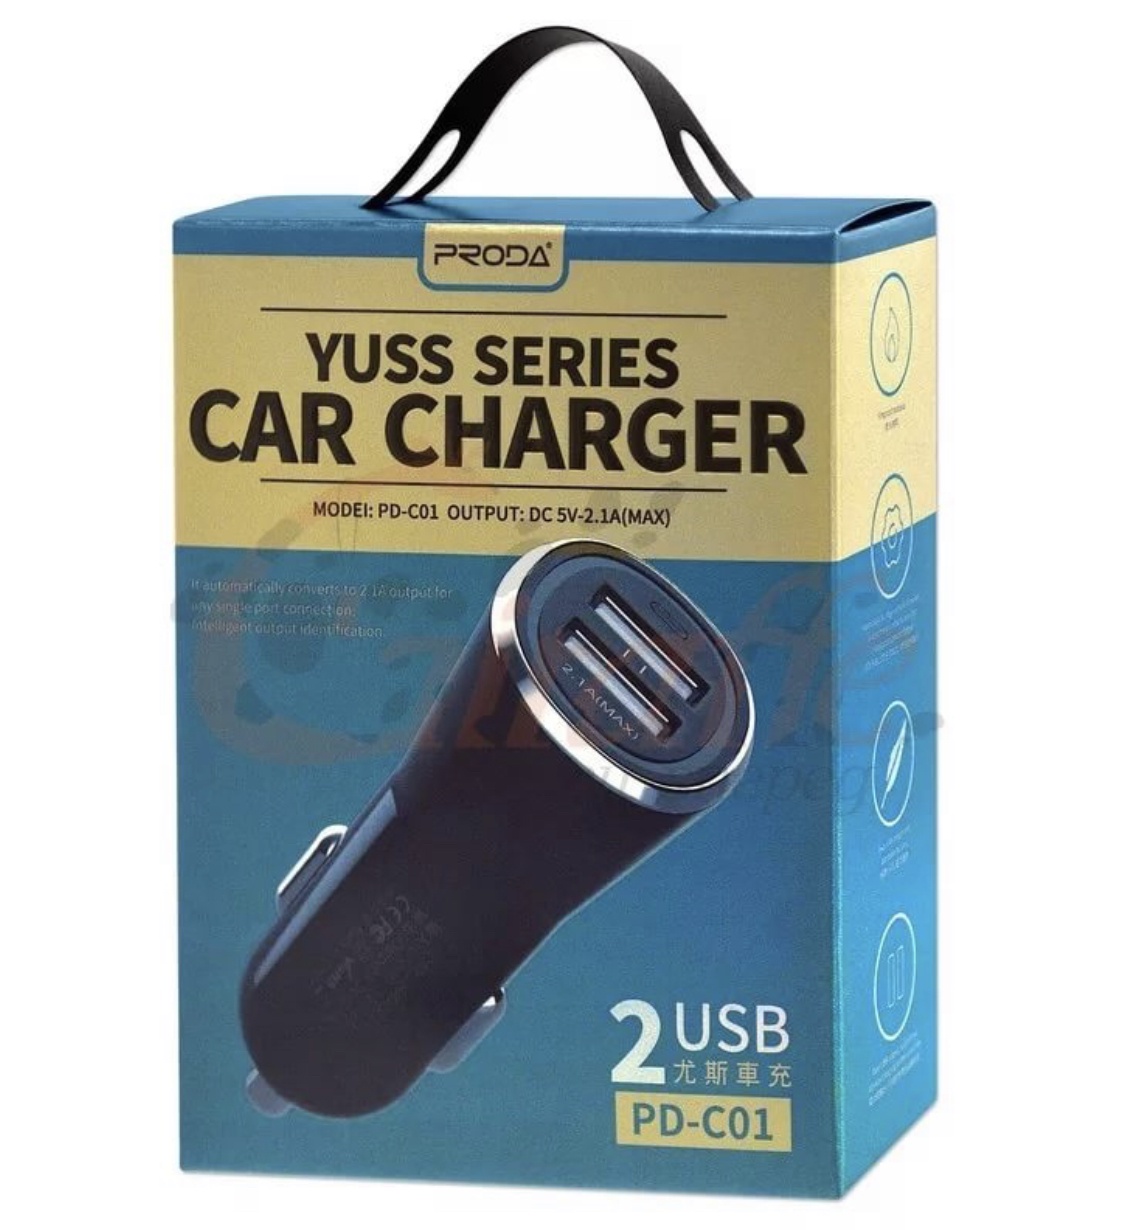 фото Автомобильное зарядное устройство PRODA Car charger yuss series PD-C01, YSC-2119, черный